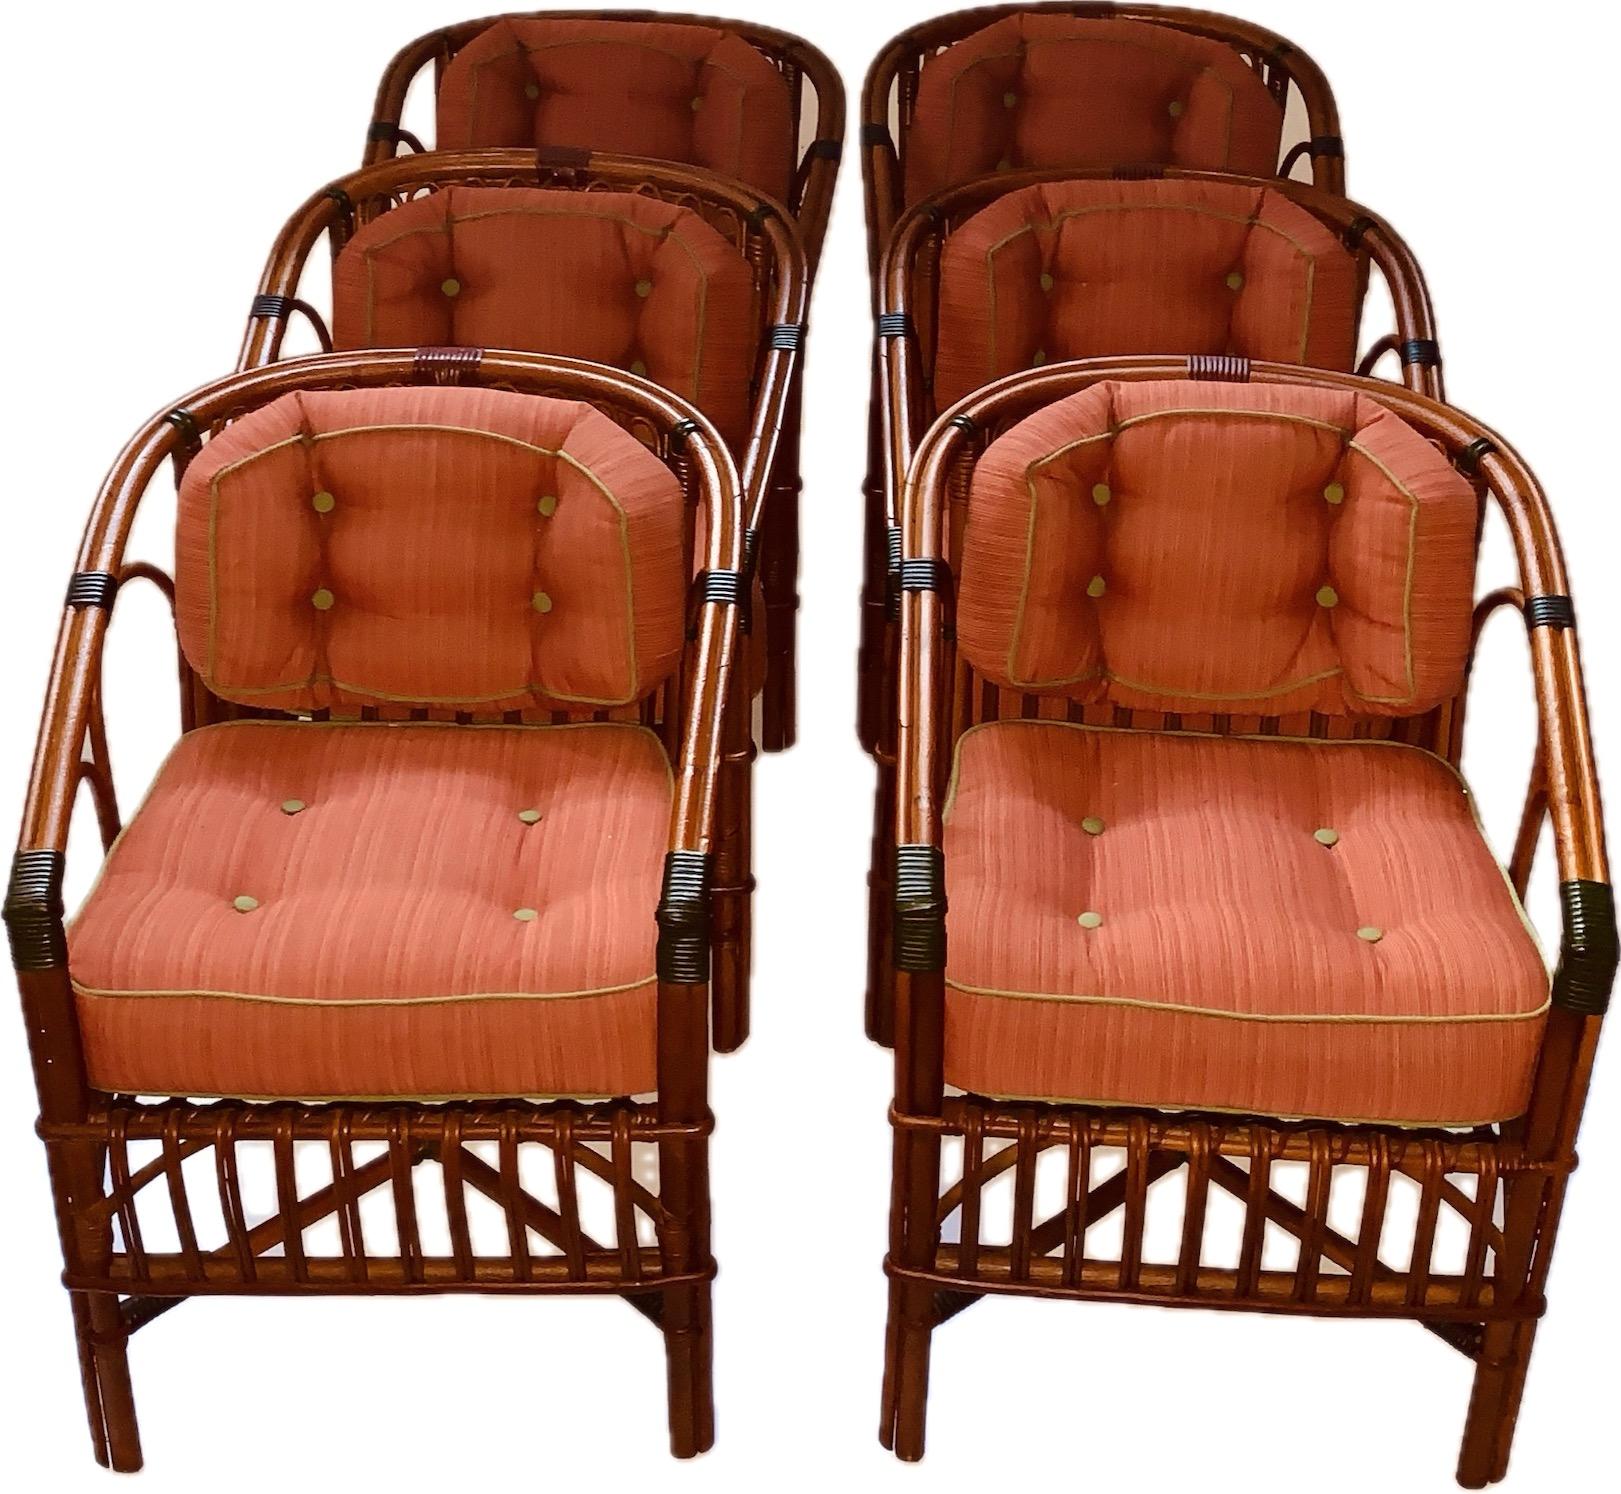 Eine sehr bequeme Reihe von sechs Rattan Arm / Esszimmerstühle, Amerikaner, C. 1 930s mit neu gepolsterten Rücken- und Sitzkissen in Sunbrella Outdoor-Stoffe in Papaya mit Cilantro Stoff Einfassung gepolstert, sowohl die Rücken- und Bodenkissen sind